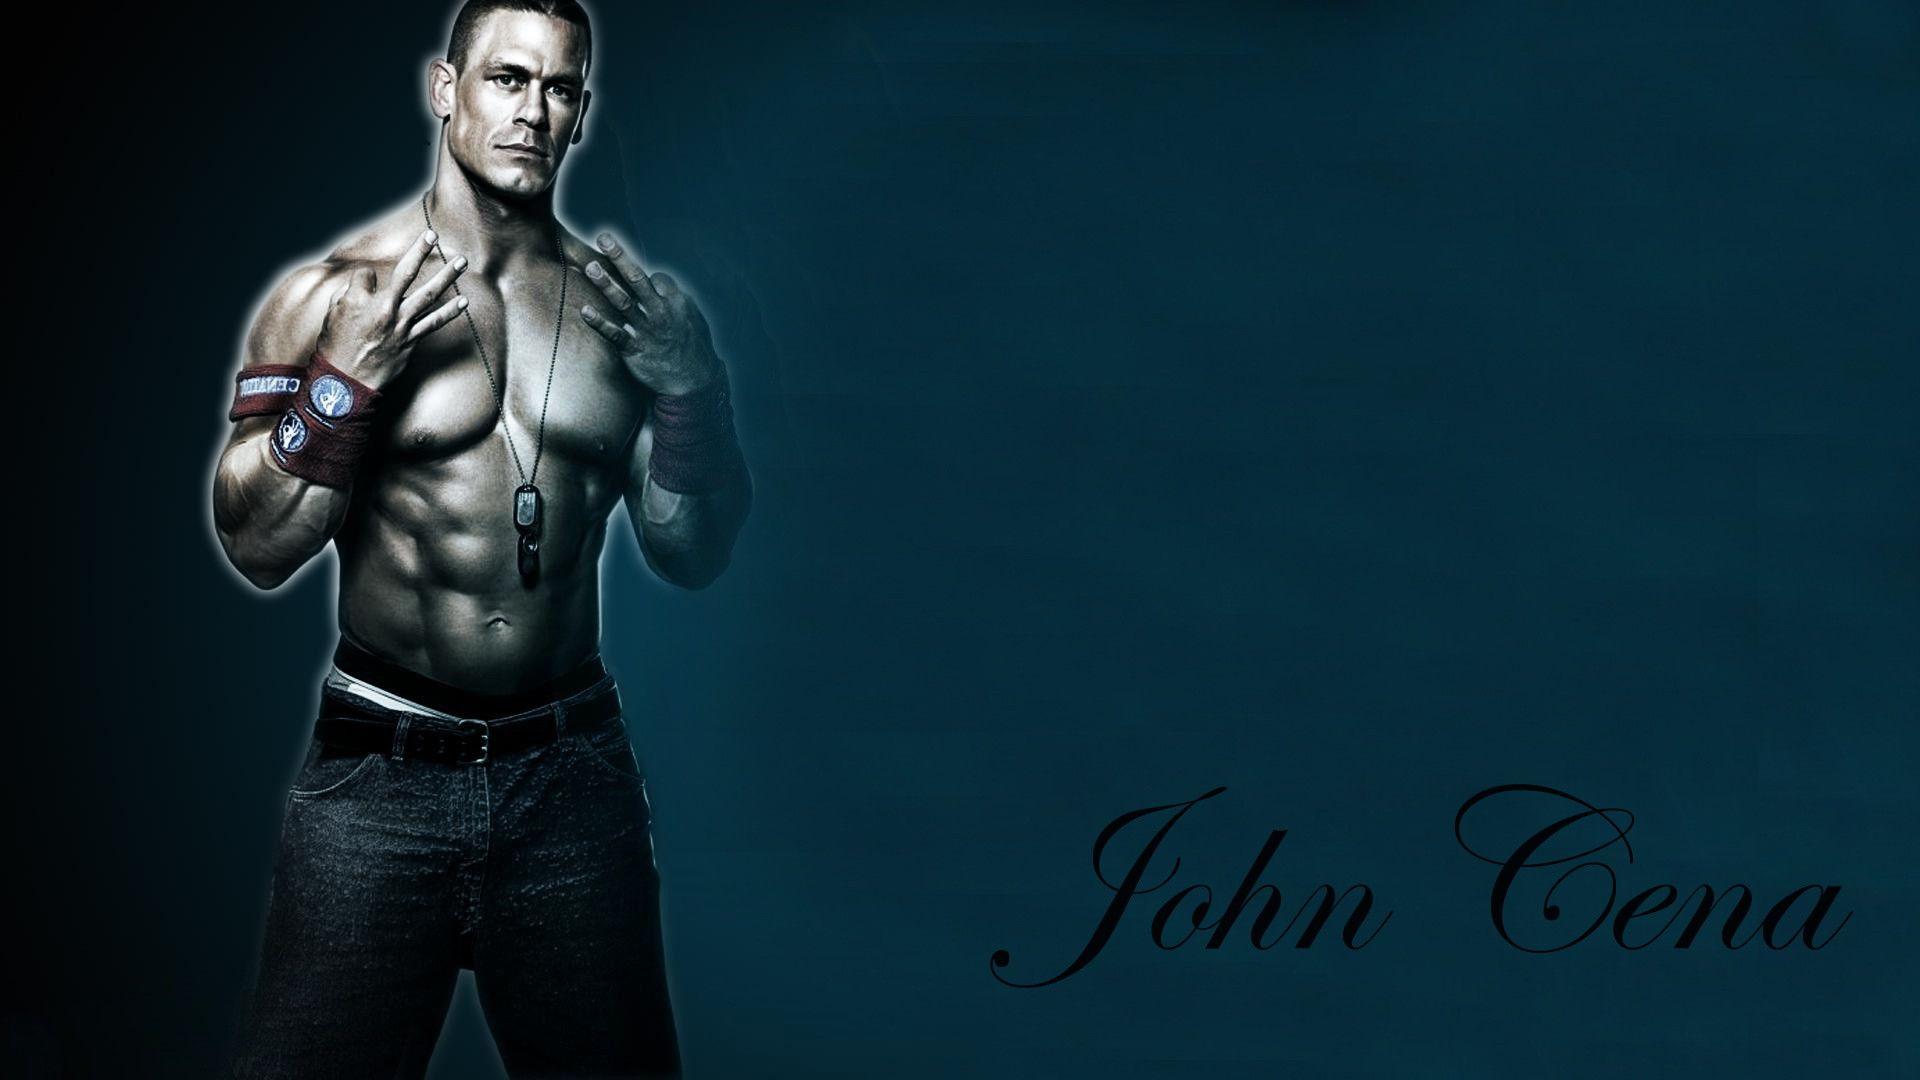 John Cena Image In HD